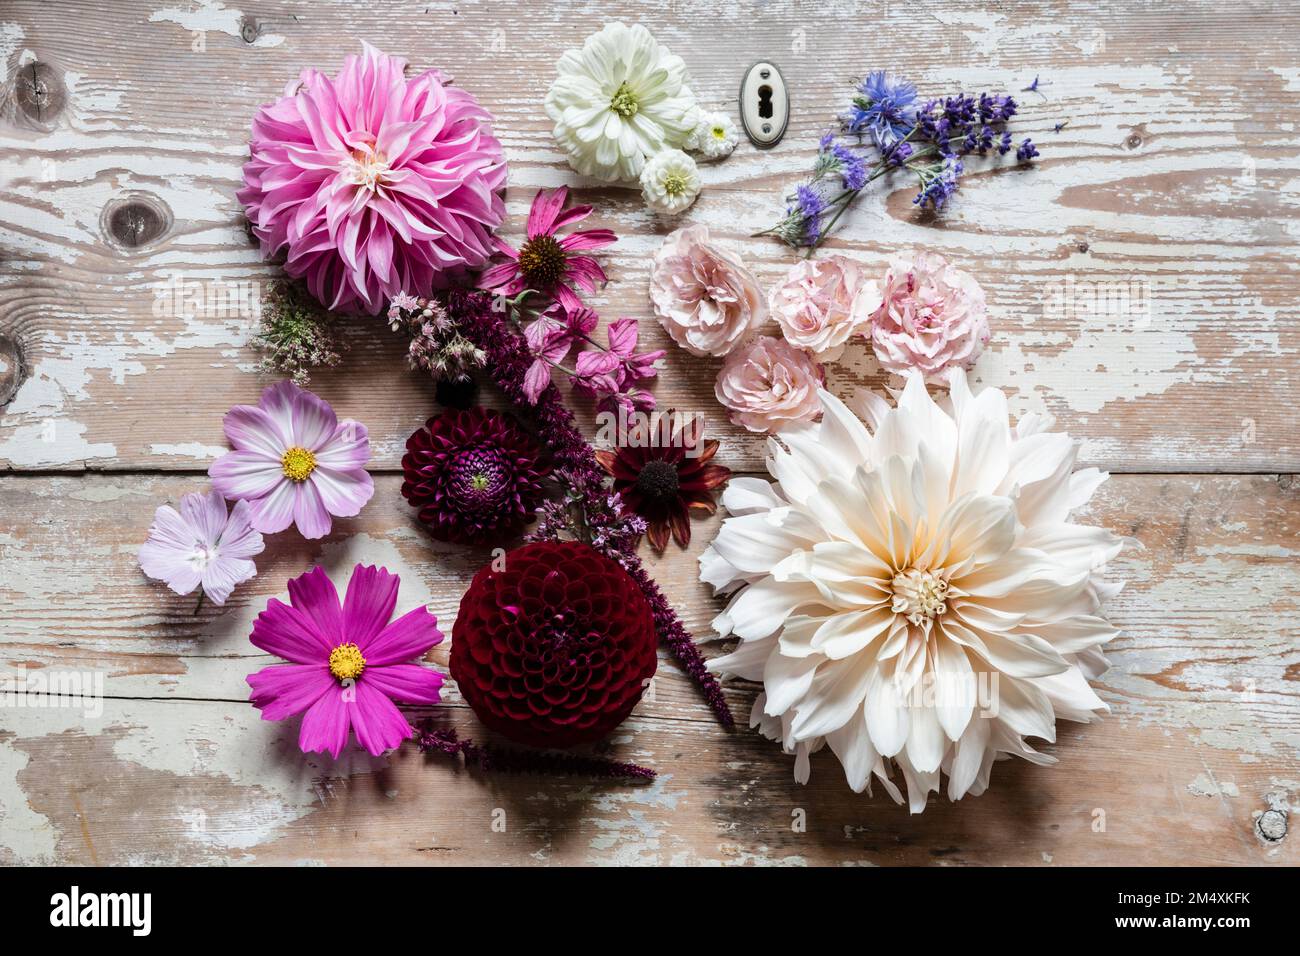 Différentes fleurs plates posées sur une surface en bois Banque D'Images